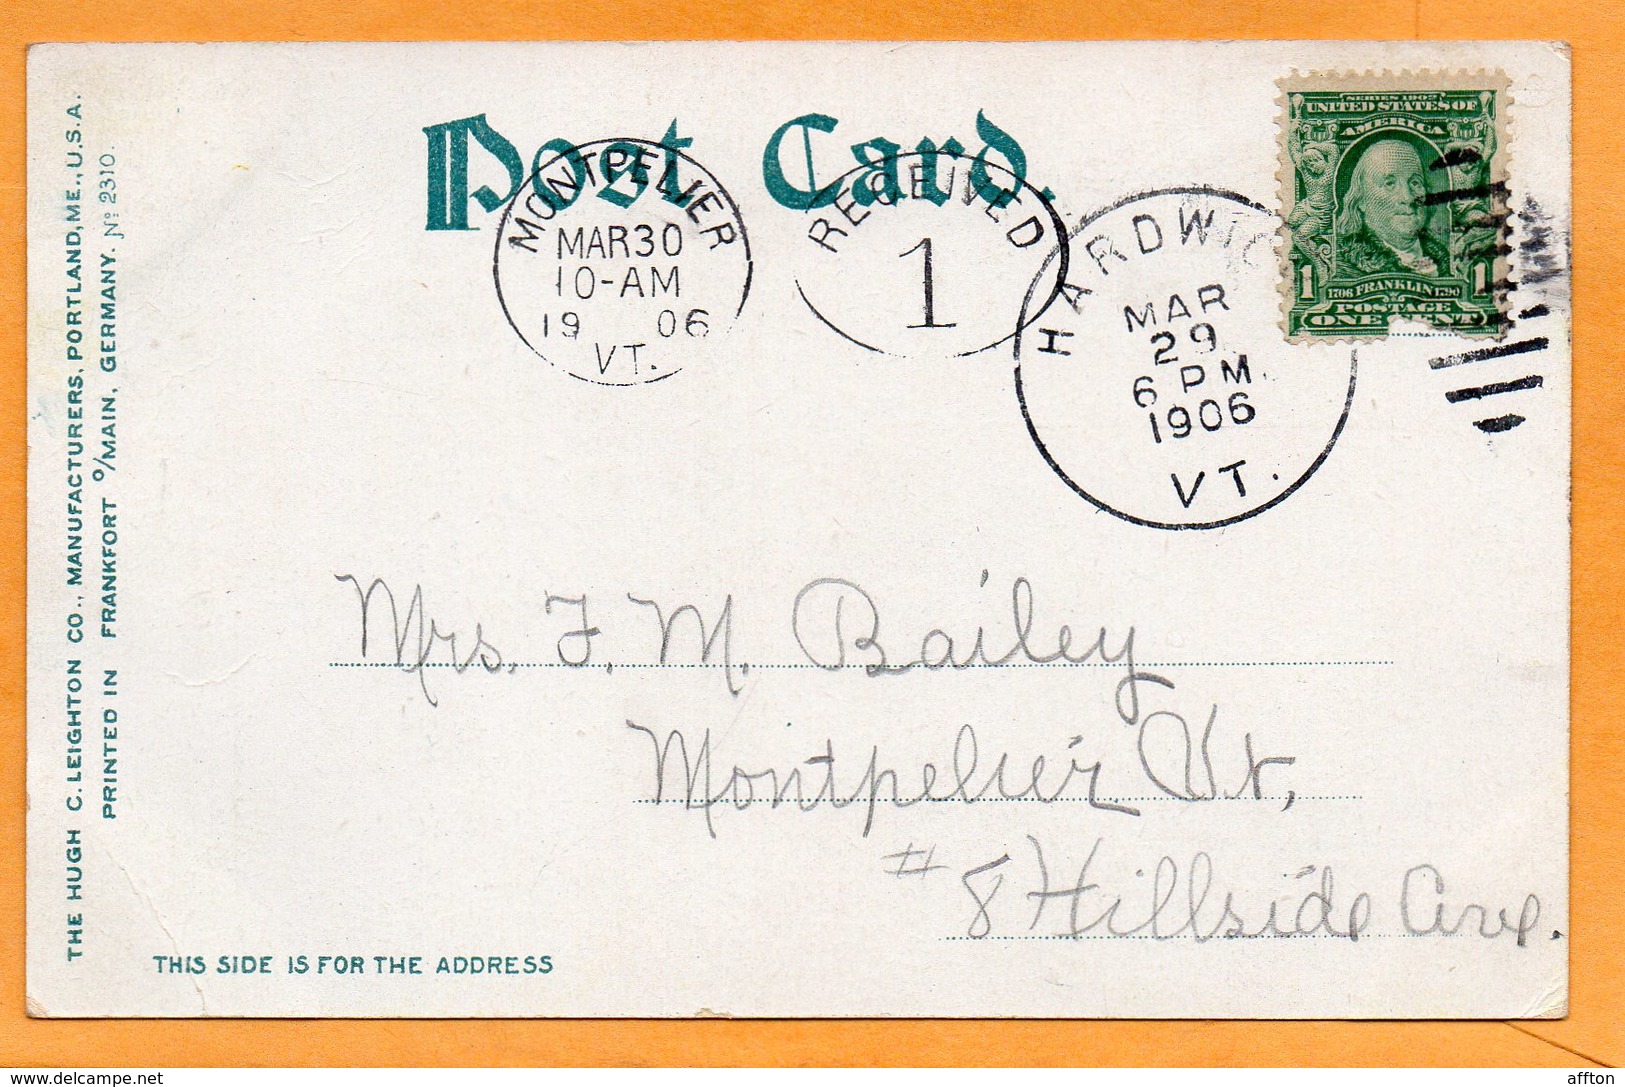 Bellows Falls Railroad VT 1907 Postcard - Rutland